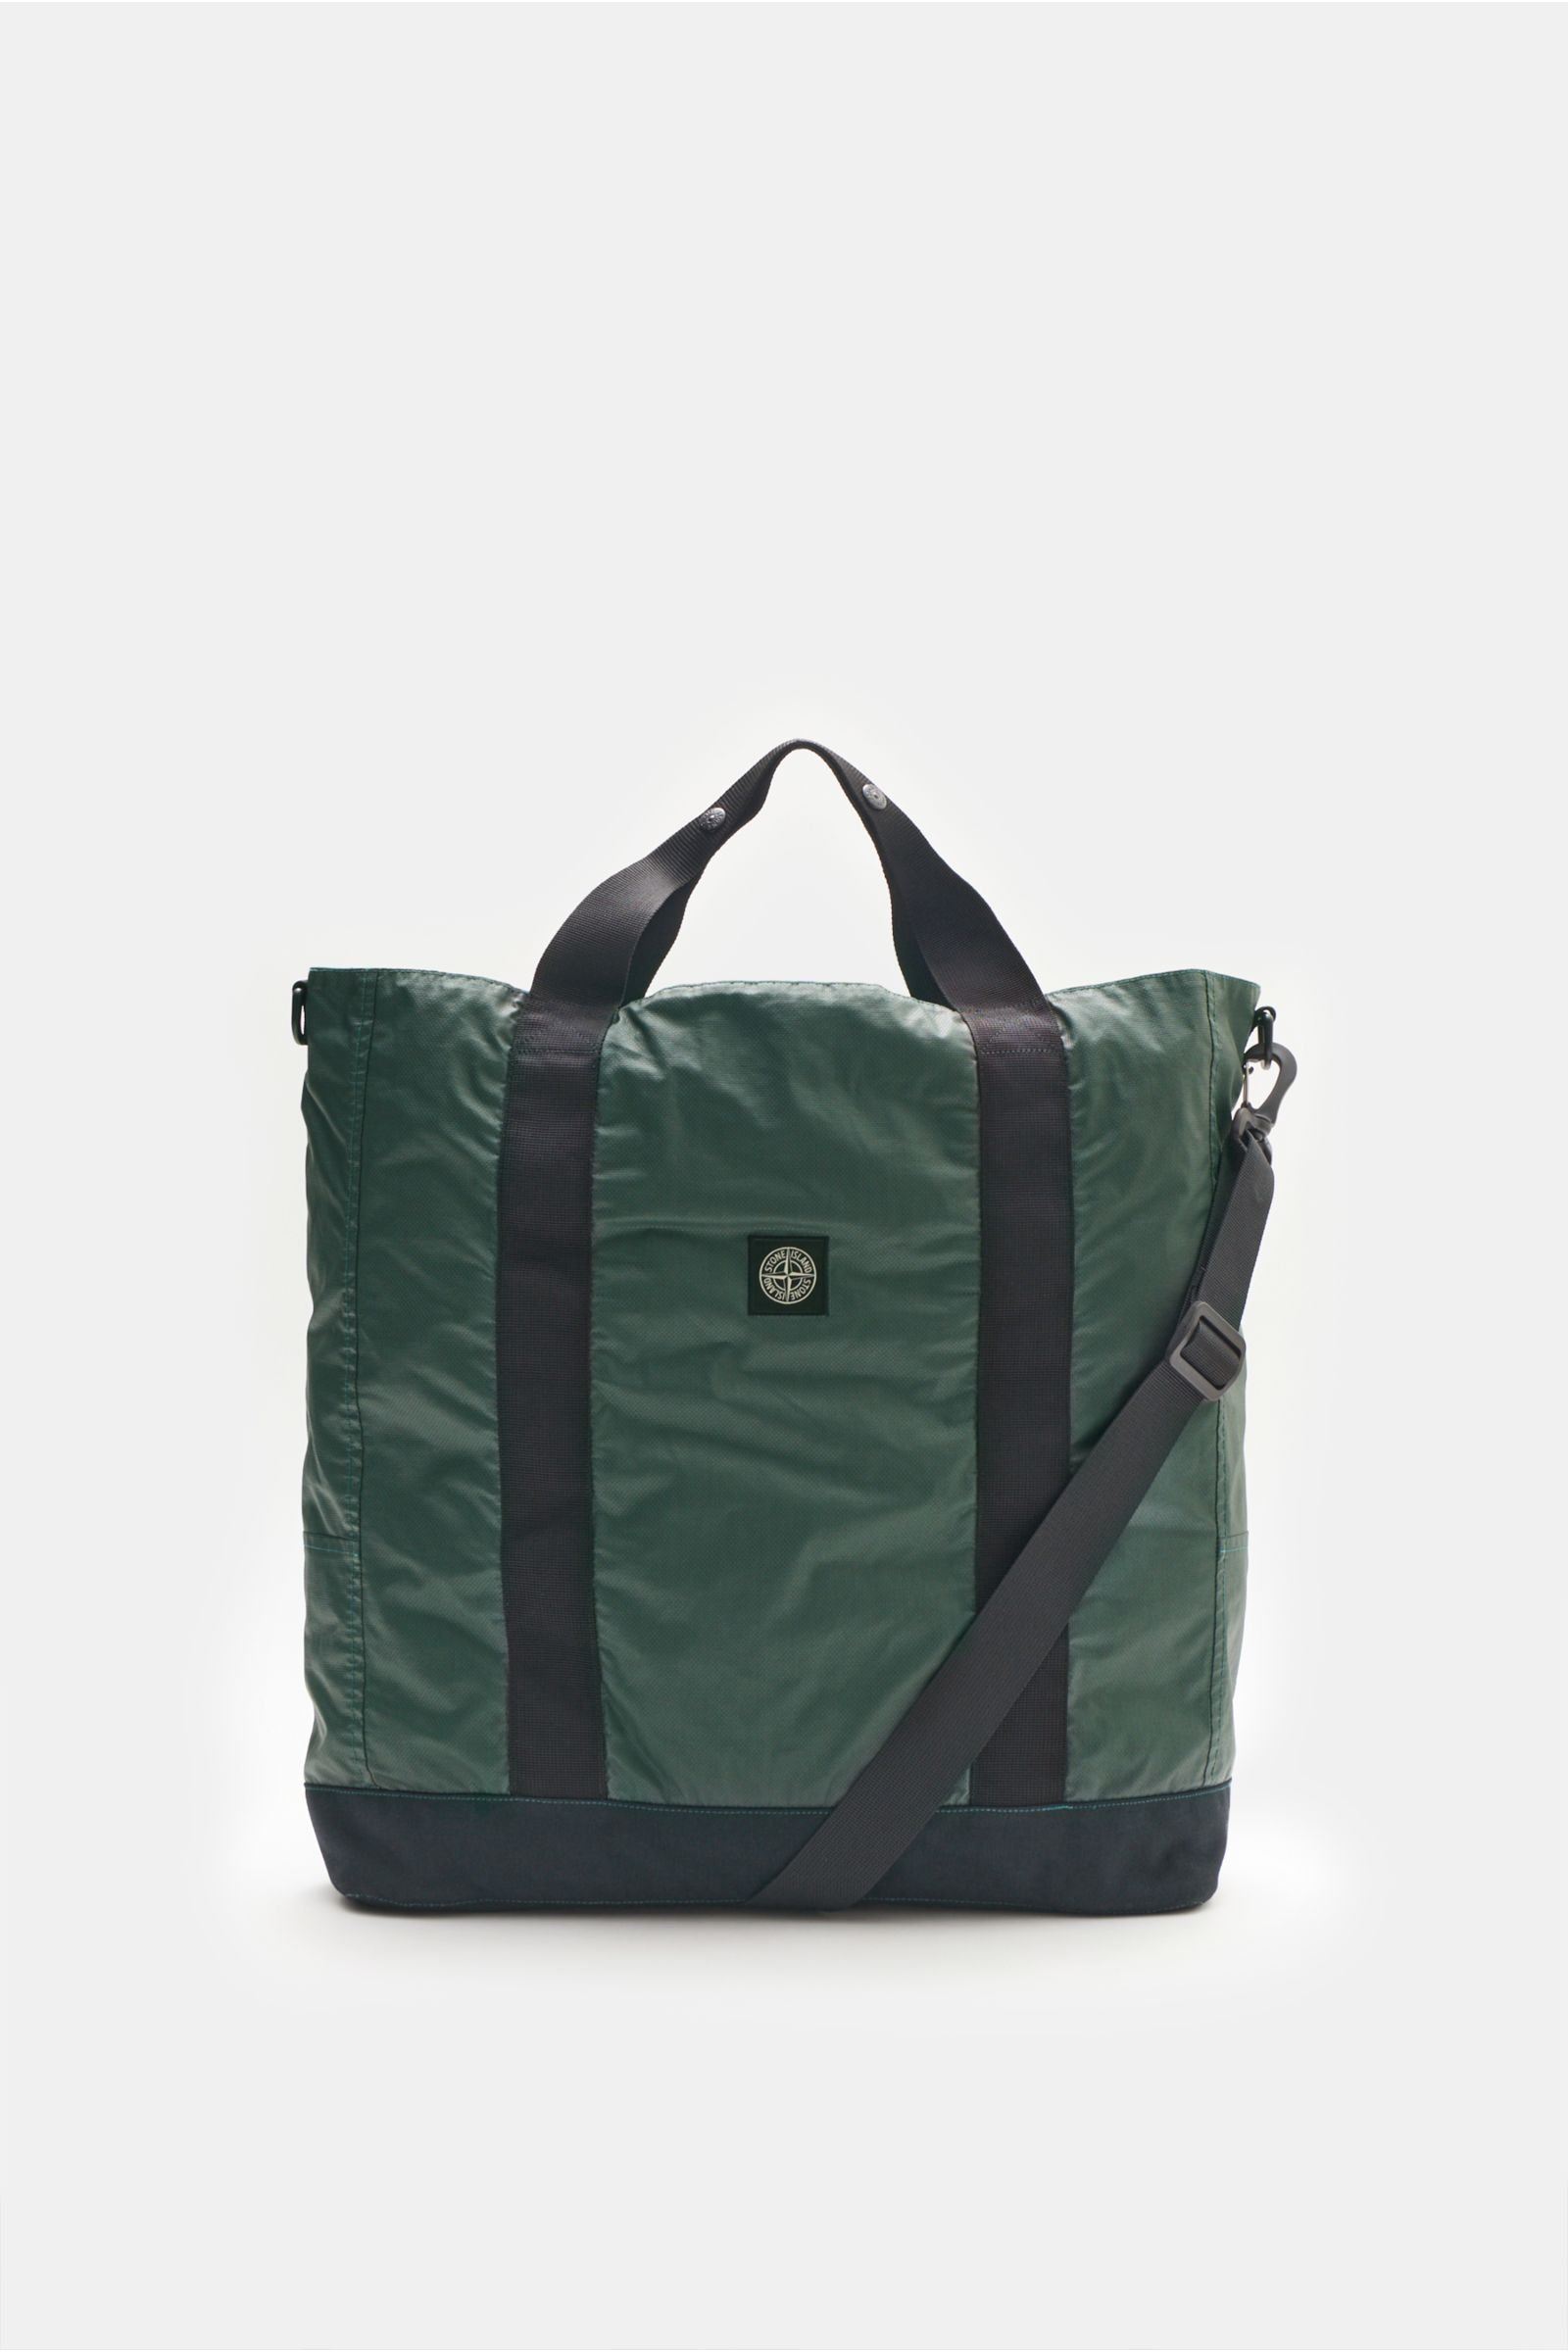 Tote bag dark green